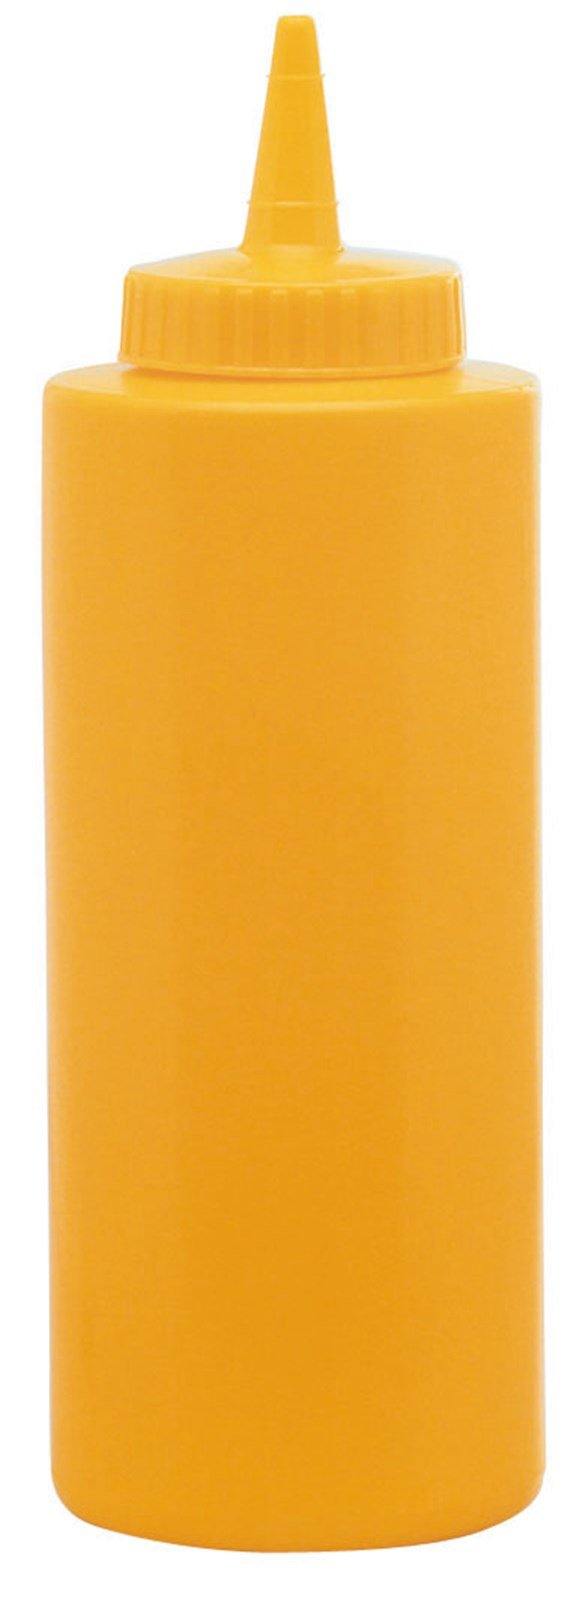 Saucen-Dispenser gelb 708ml - MyLiving24